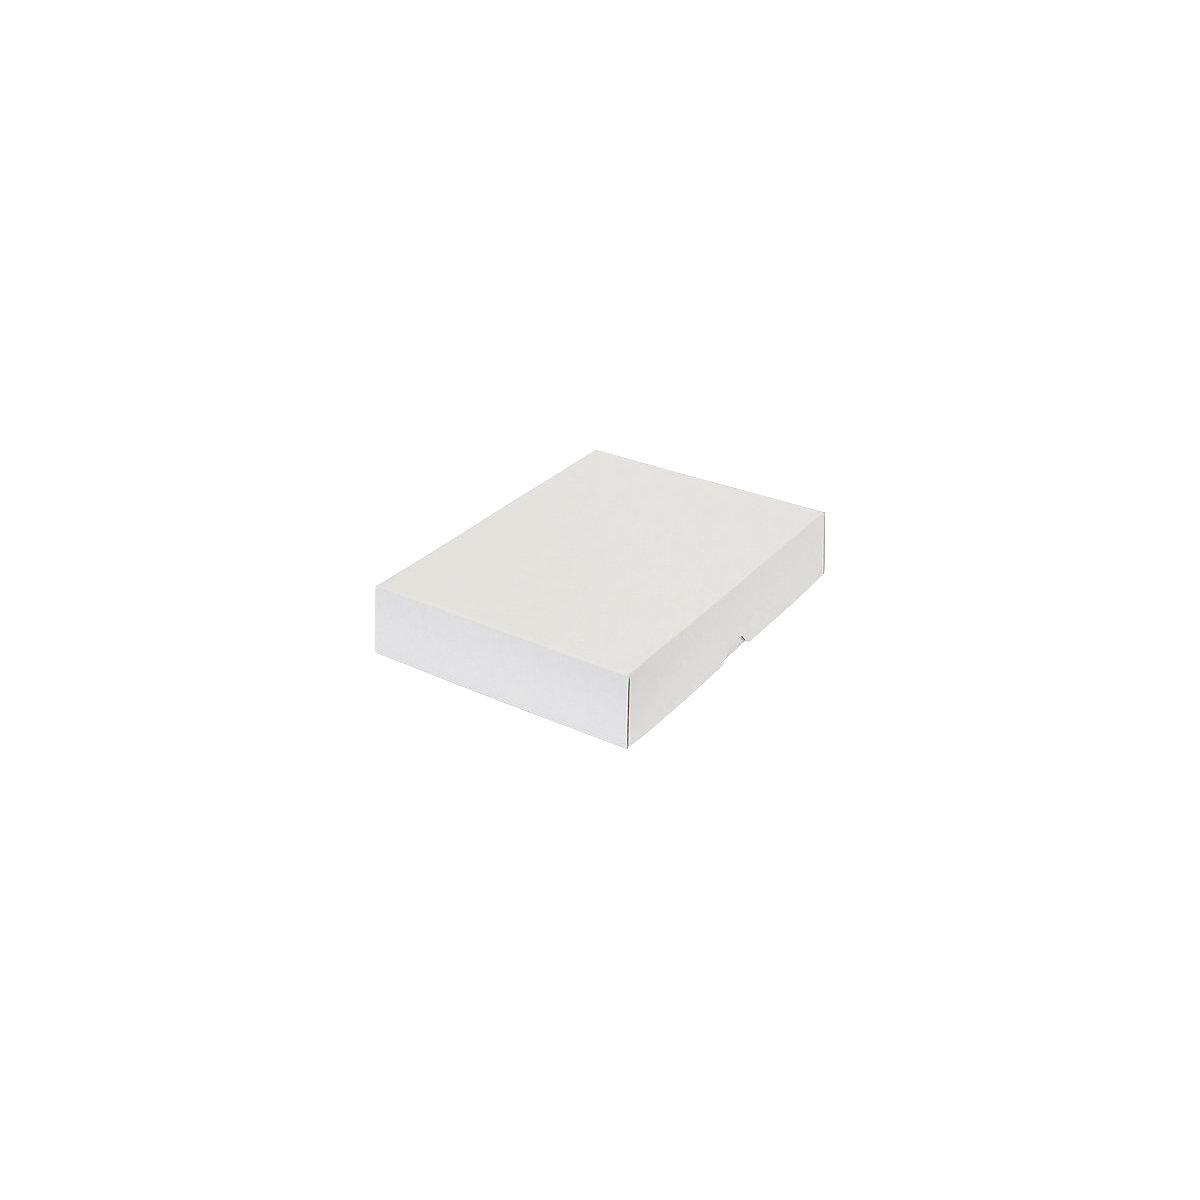 Stülpdeckelkarton, zweiteilig, Innenmaße 302 x 213 x 55 mm, A4, weiß, ab 150 Stk-50